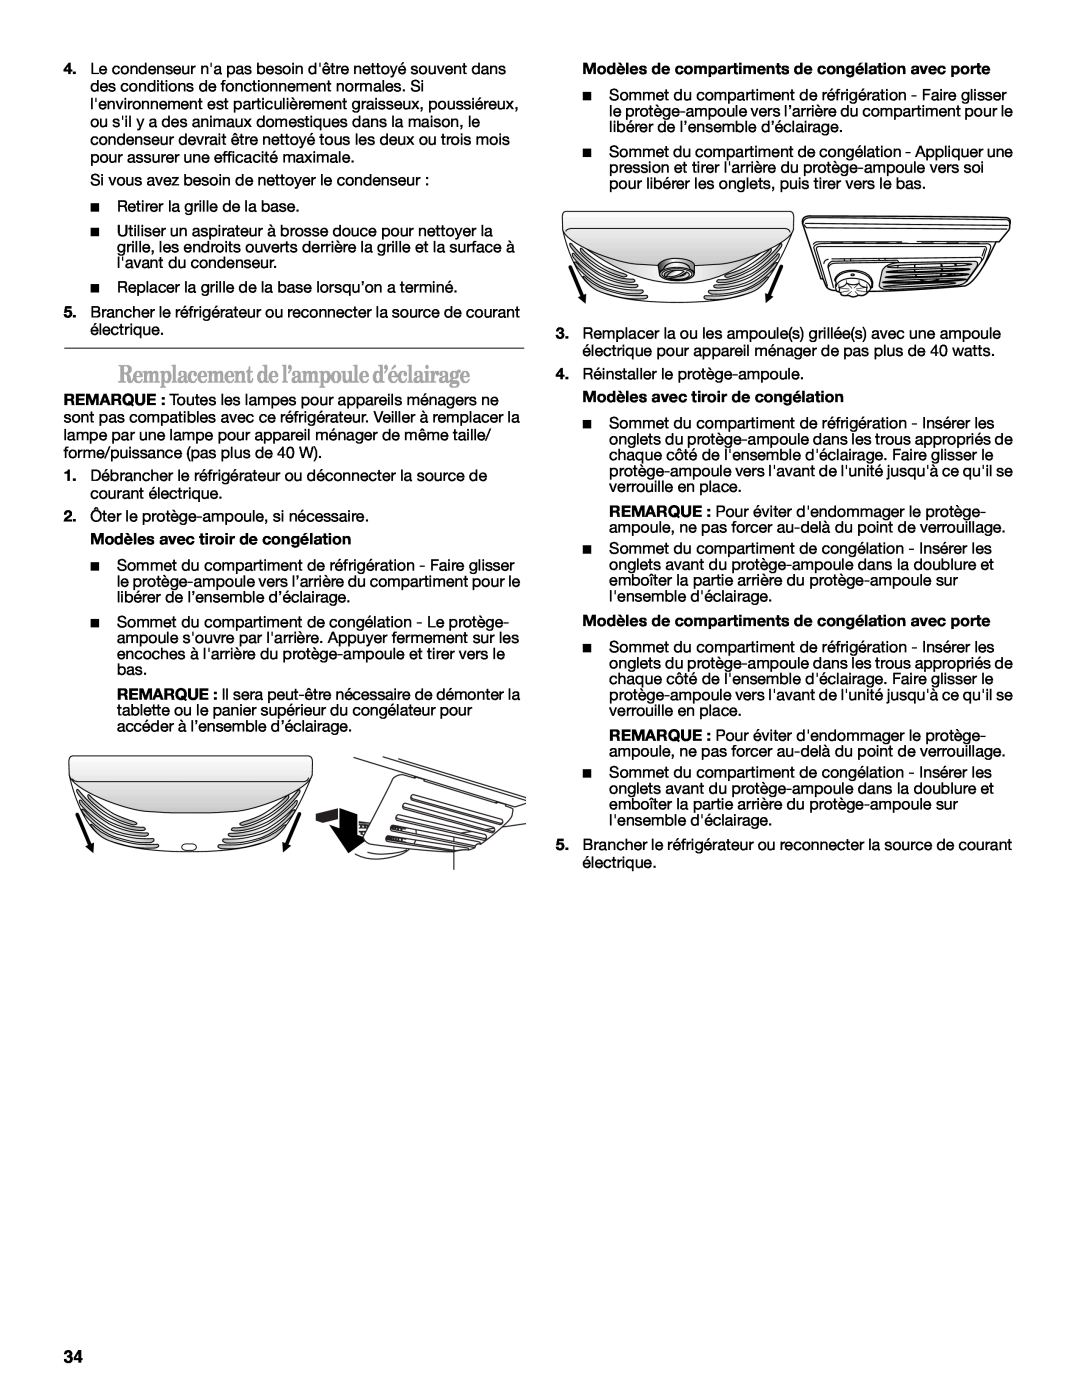 Whirlpool W10175448A installation instructions Remplacement de l’ampoule d’éclairage, Modèles avec tiroir de congélation 